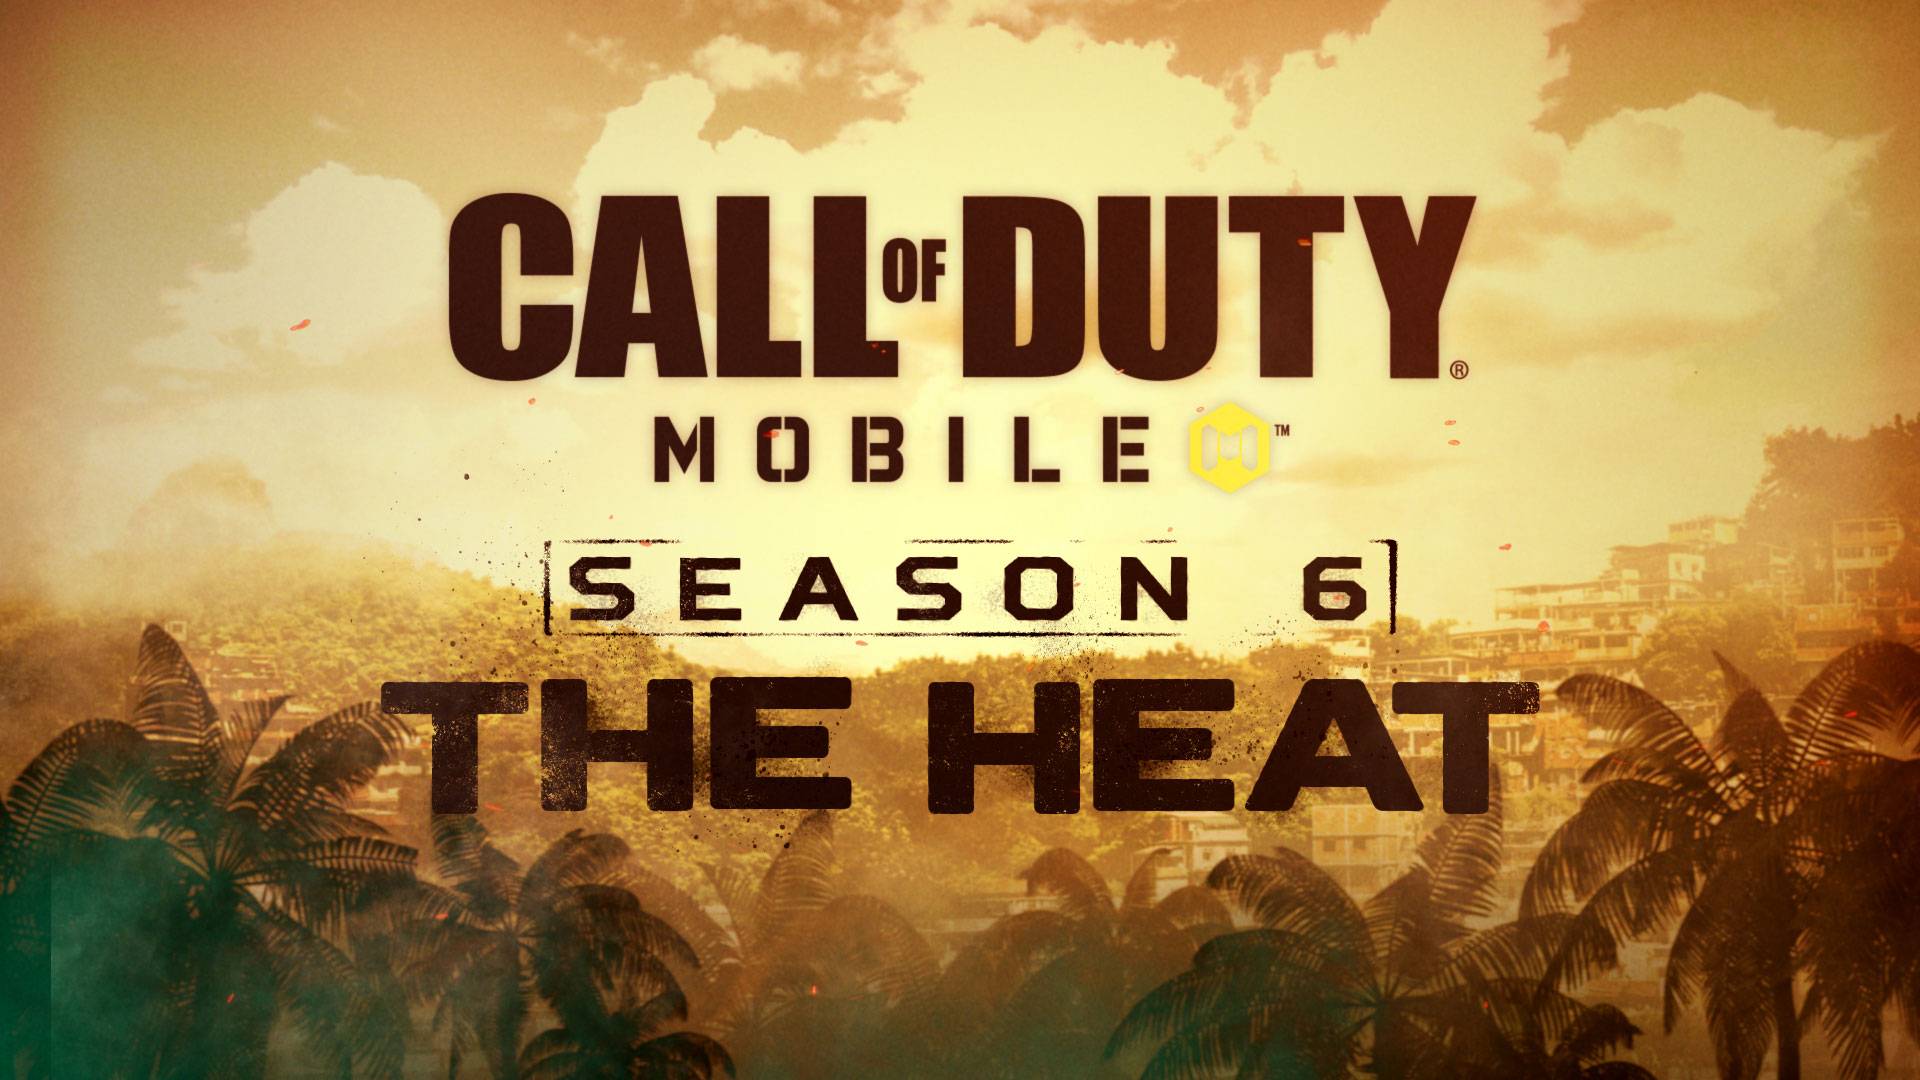 Call of Duty Mobile Season 6